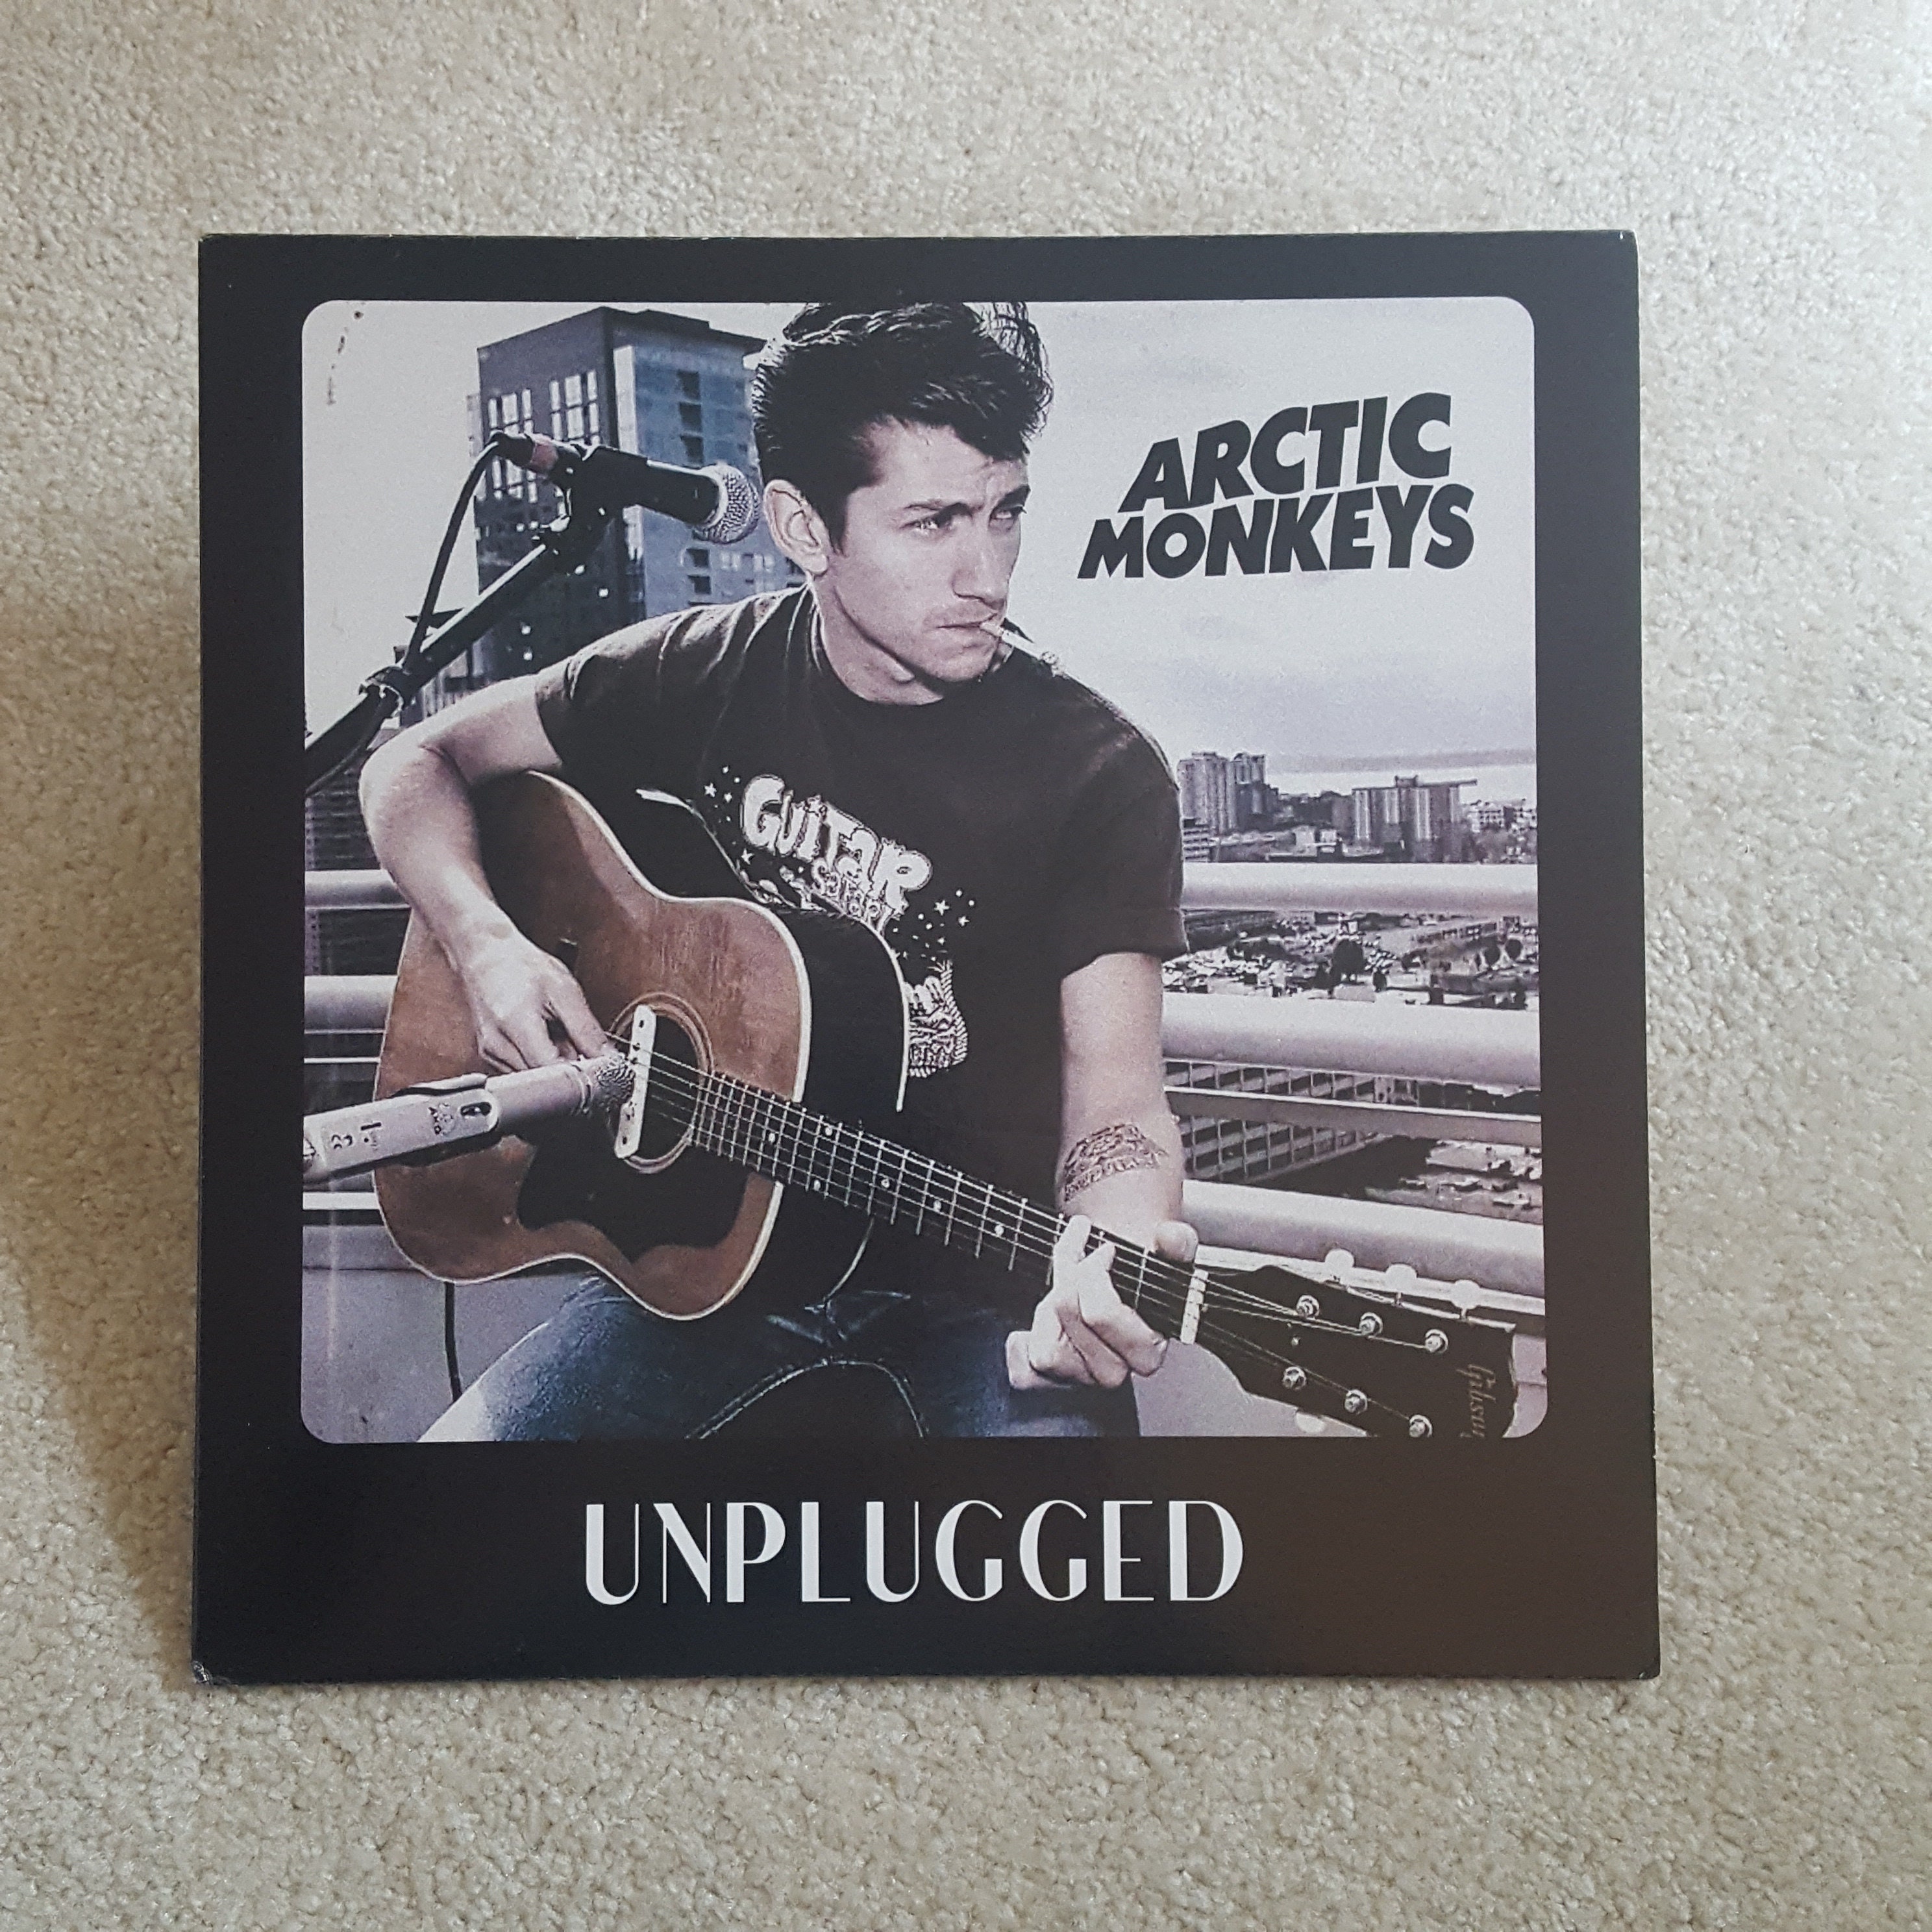 Raro Arctic Monkeys Vinyl Unplugged lp IMPORTA navi dagli Stati Uniti  Trasmissione radiofonica in diretta, Alex Turner, Succhiare e vedere  Spedizione gratuita -  Italia